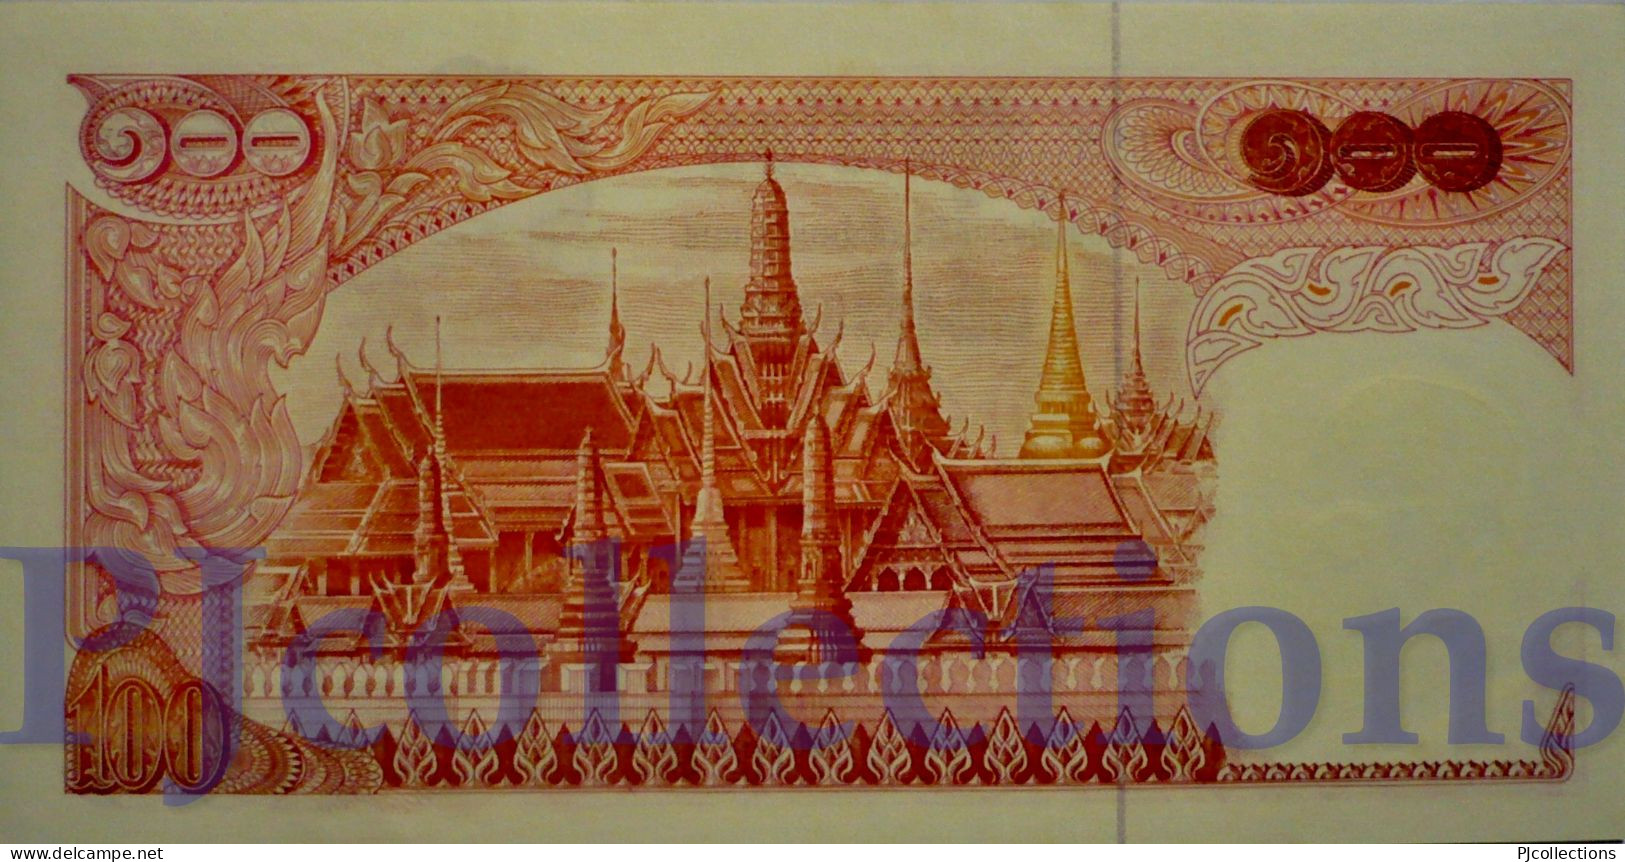 THAILAND 100 BAHT 1969 PICK 85a AUNC - Thailand